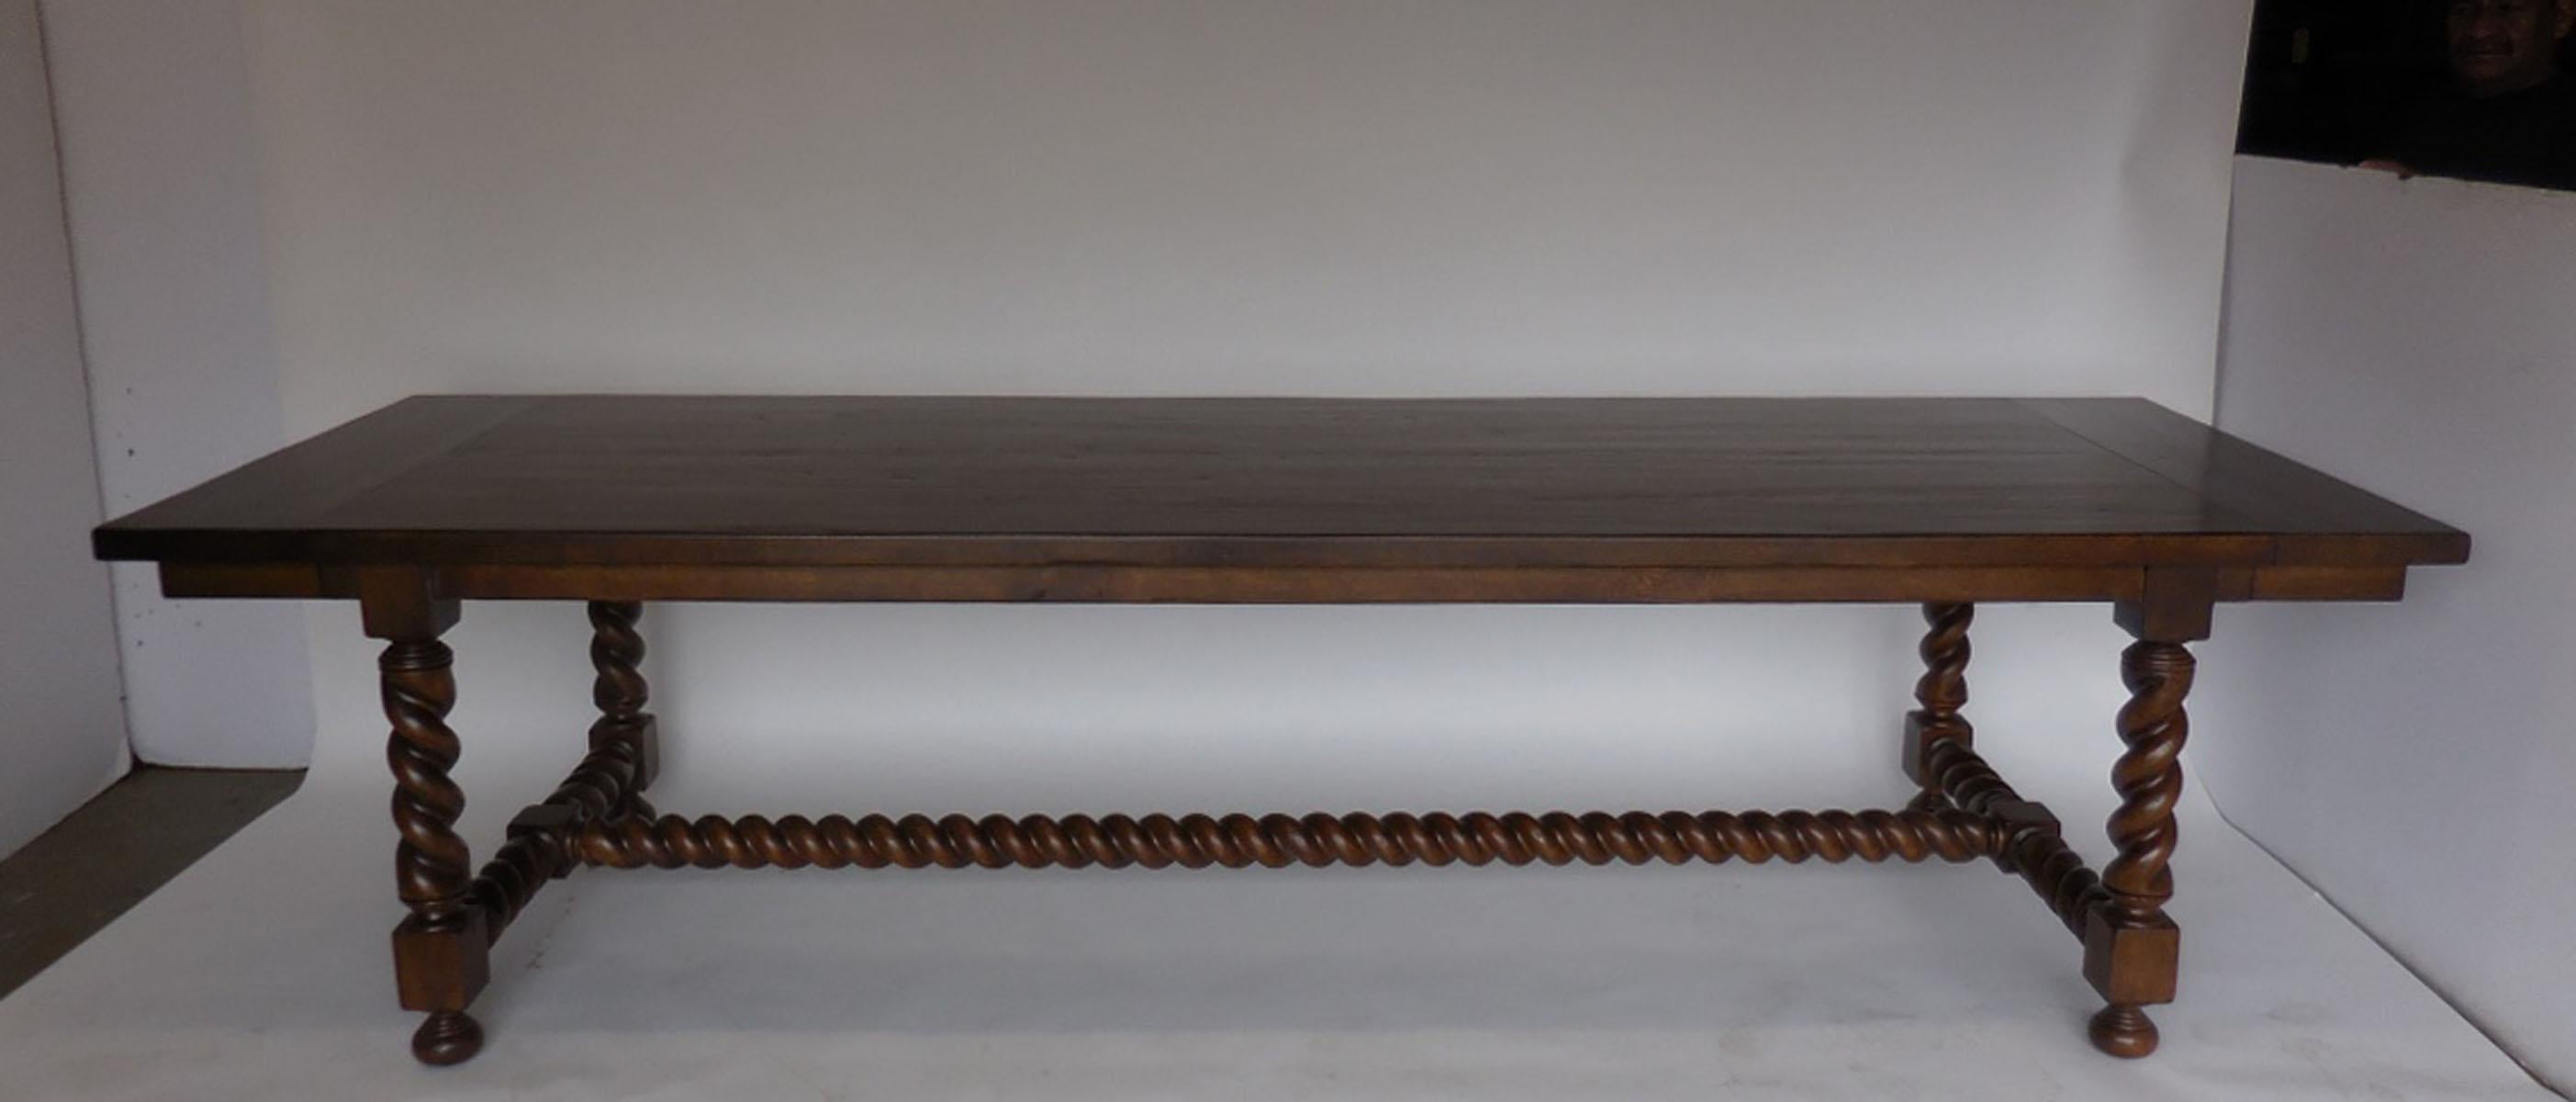 Dies ist unser maßgefertigter Salamanca-Esstisch (Gerste mit gedrehten Beinen). Die 10-Zoll-Bretter an jedem Ende lassen sich ausziehen, um ein 14-Zoll-Blatt zu platzieren. Die Blätter haben eine Schürze. Dieses Exemplar hat die Maße 120 x 40 x 30,5